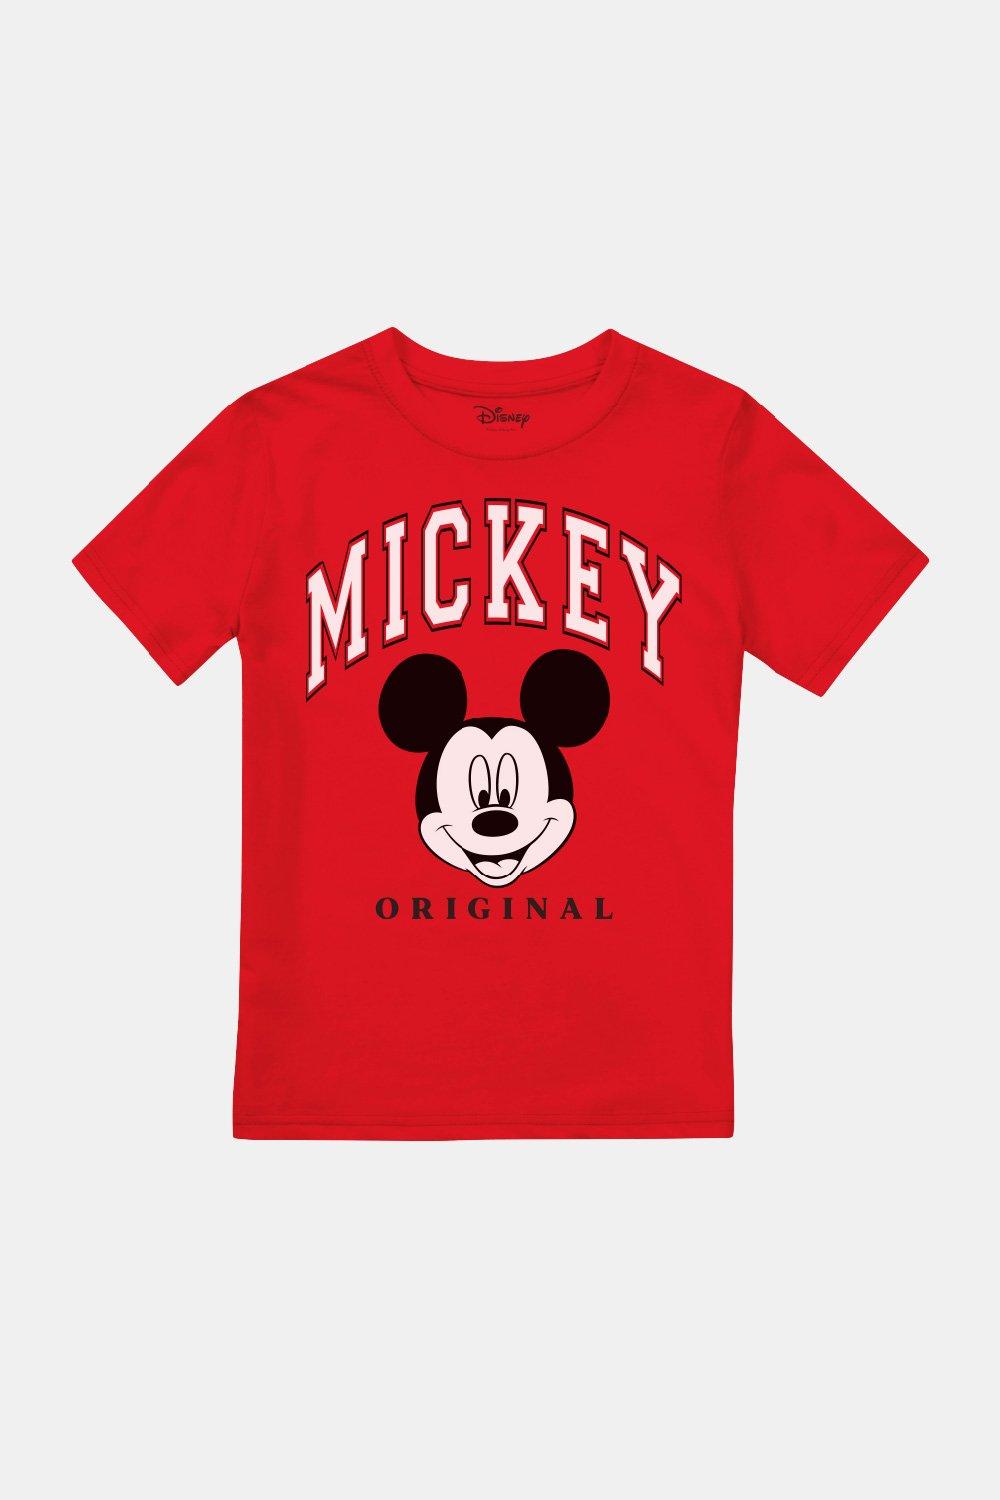 Оригинальная футболка с Микки Маусом для мальчиков Disney, красный фотографии